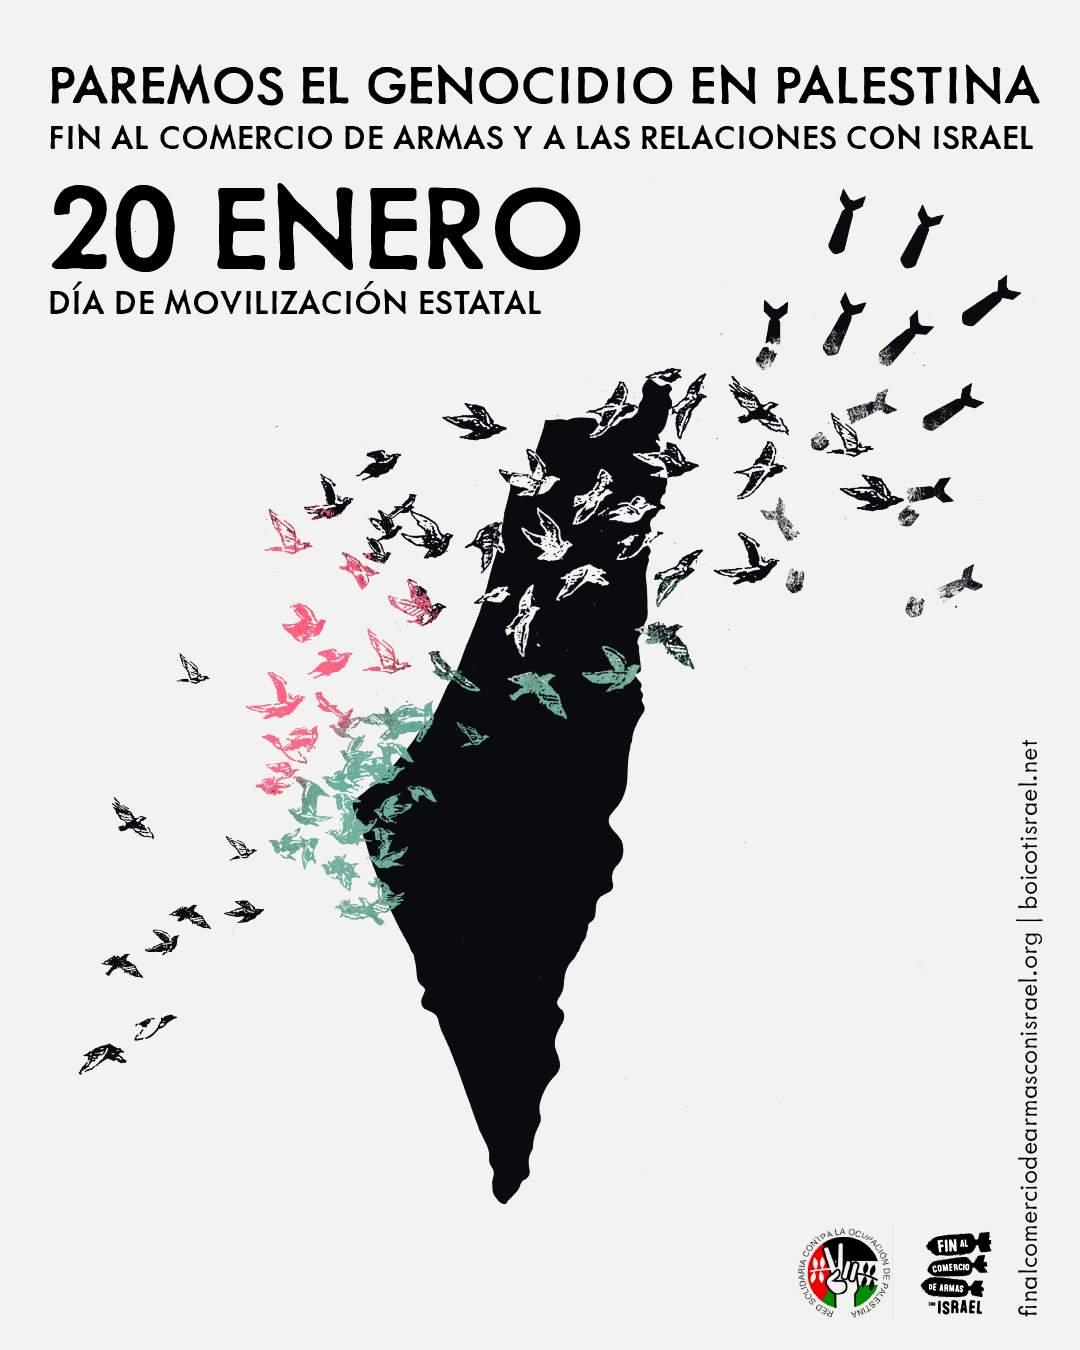 20E: Manifestaciones en 90 ciudades contra la guerra y ocupación de Palestina